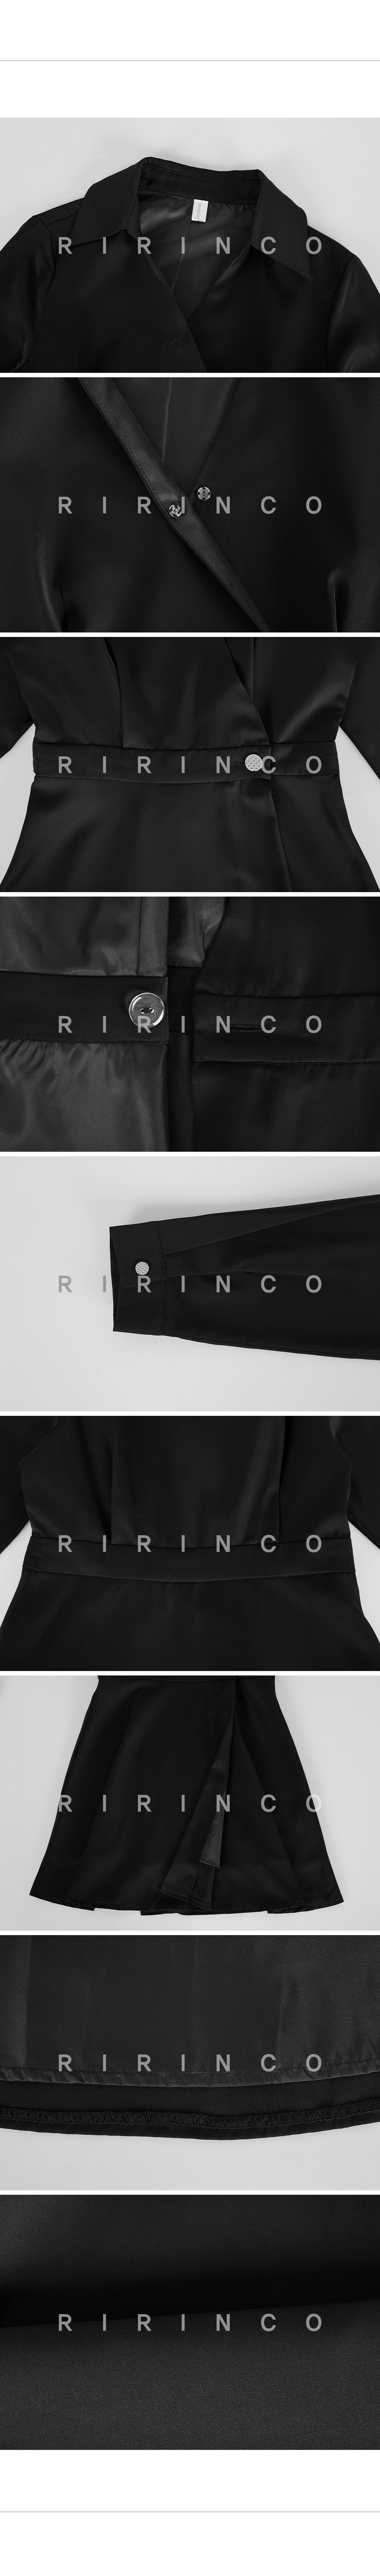 RIRINCO オープンカラーボタンラップミニワンピース